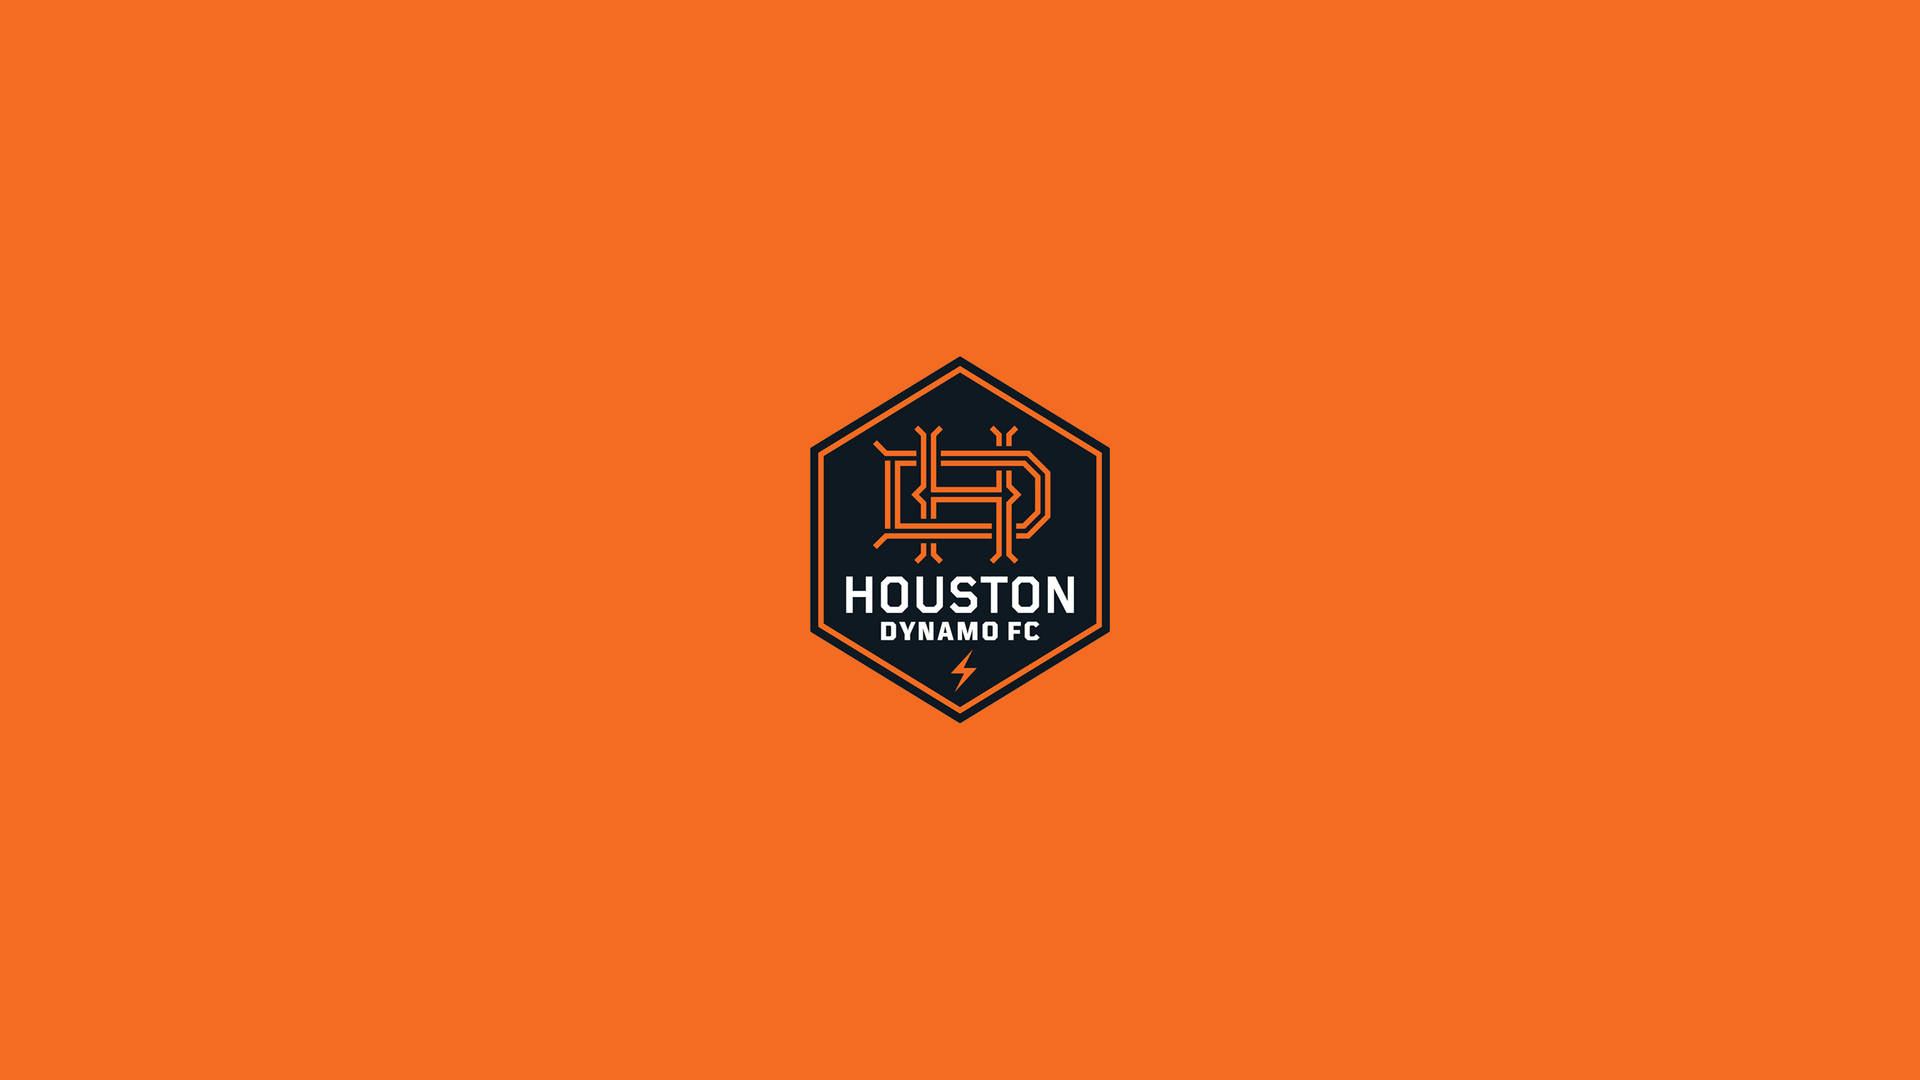 Houston Dynamo 2560 X 1440 Wallpaper